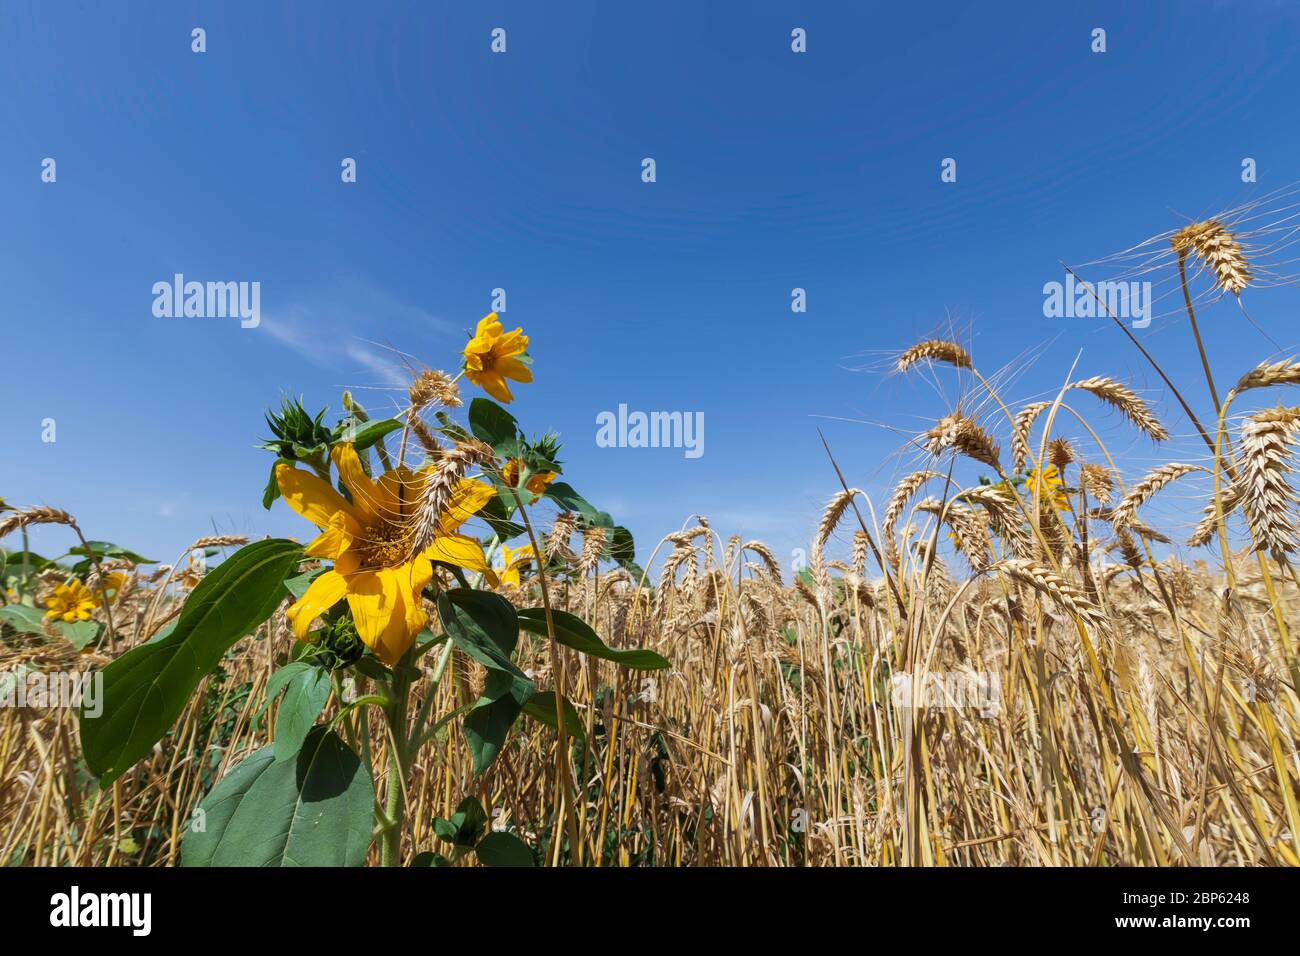 Kopf einer blühenden Sonnenblumenblume Nahaufnahme auf einem Hintergrund von blauem Himmel und einem Feld von reifem Weizen Stockfoto